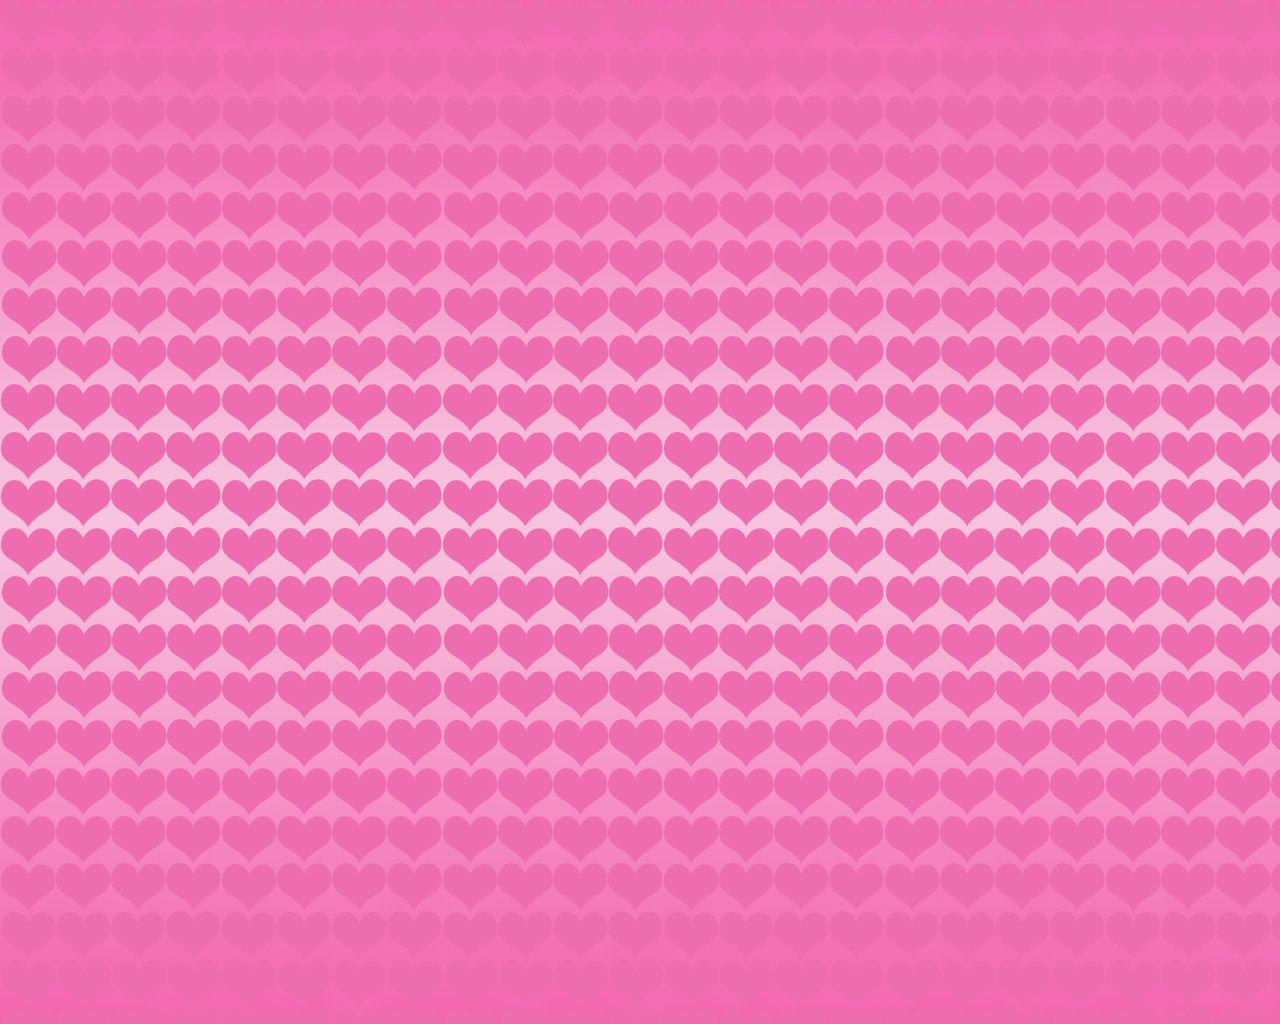 Free download Pink Desktop Wallpaper Pattern wallpaper Pink Desktop Wallpaper [1280x1024] for your Desktop, Mobile & Tablet. Explore Pink Pattern Wallpaper Background. Cool Pattern Wallpaper, Cute Wallpaper Patterns, Free